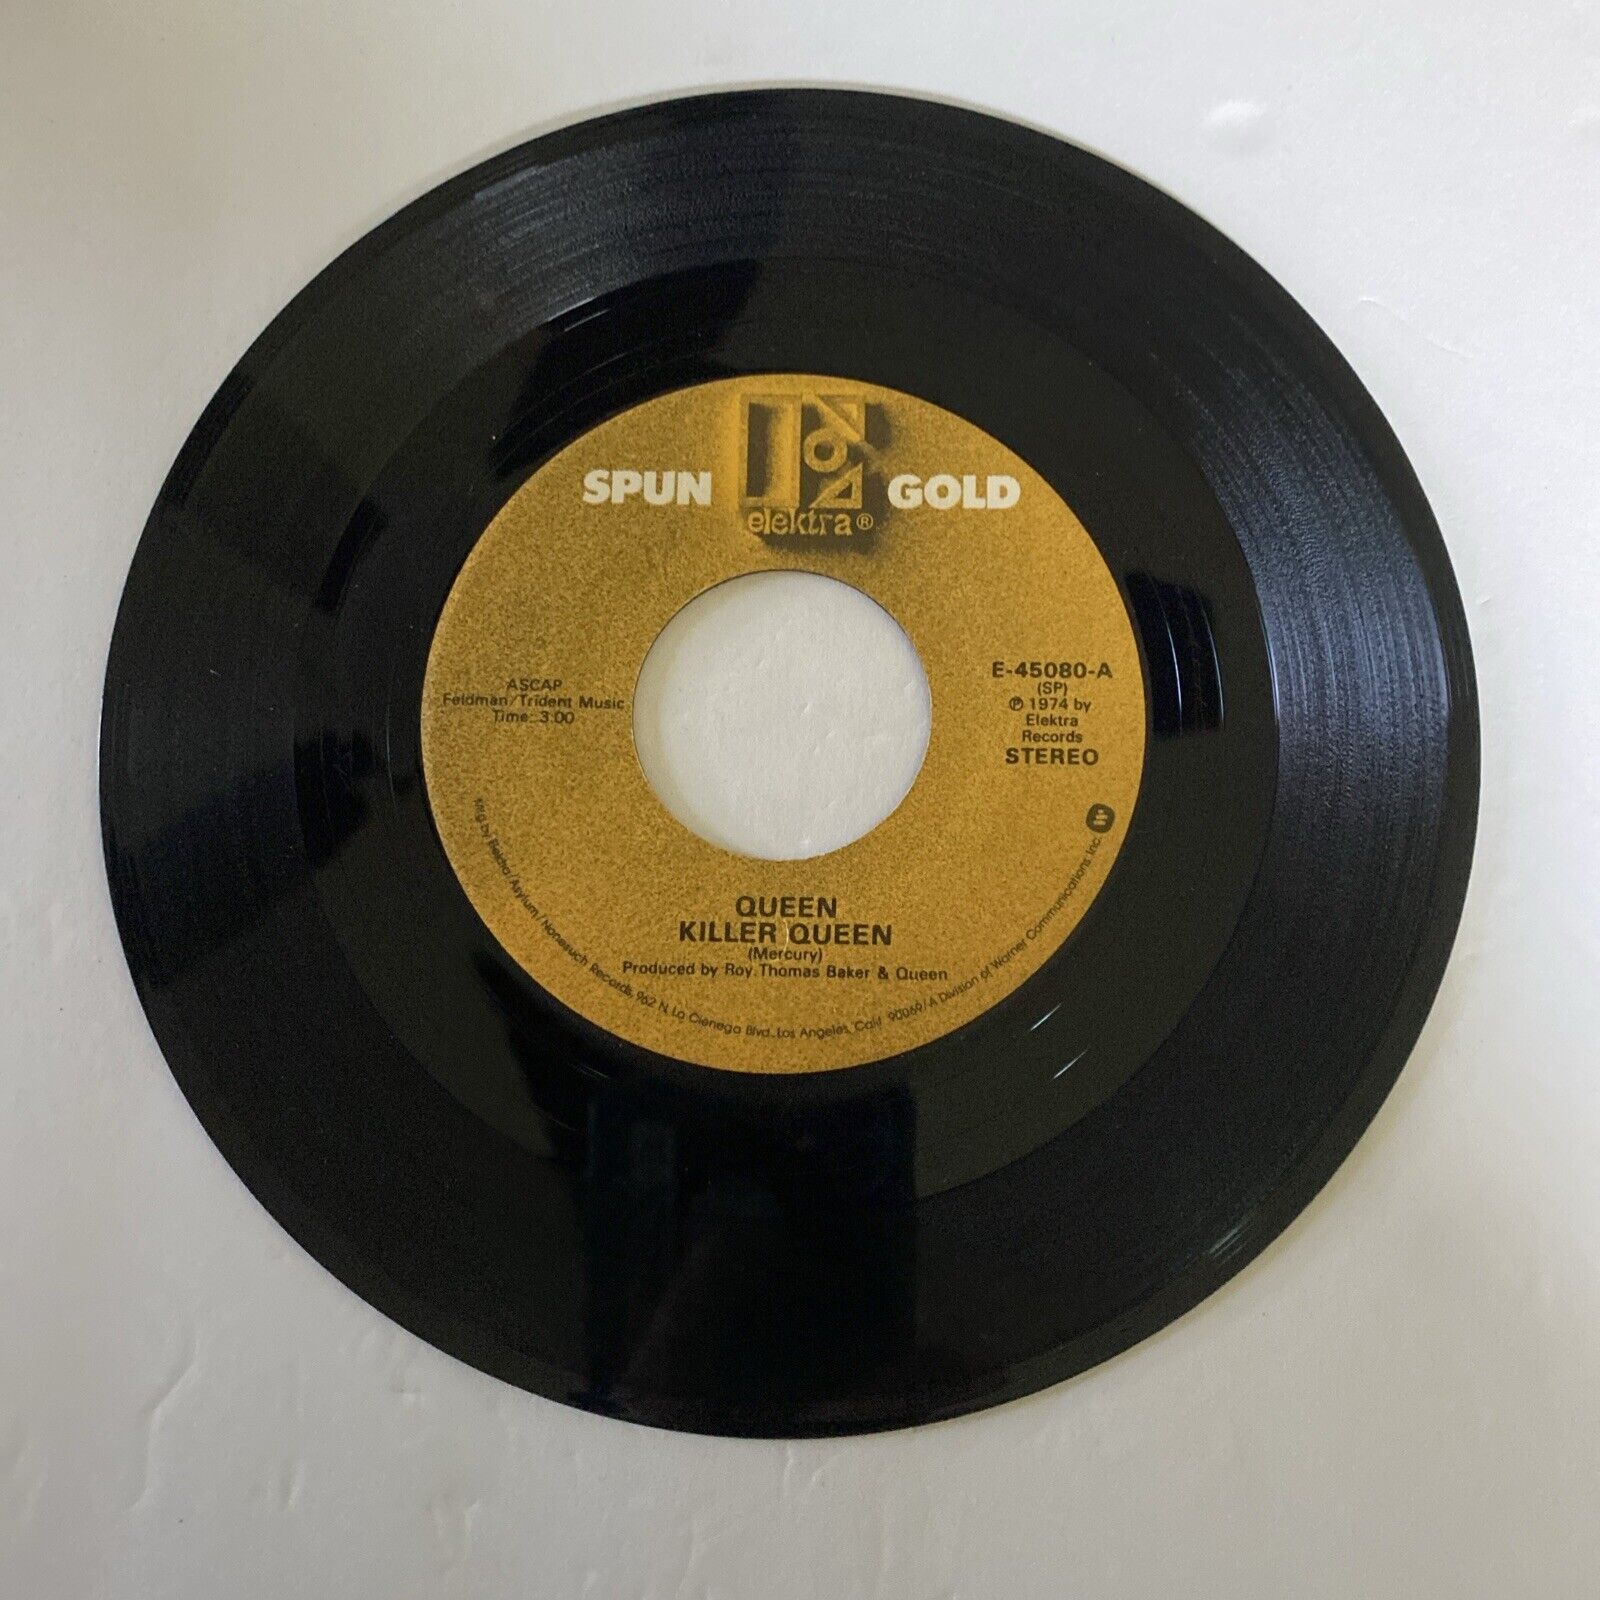 Queen - Killer Queen / Liar - Spun Gold Elektra 45 Vinyl Record #5412